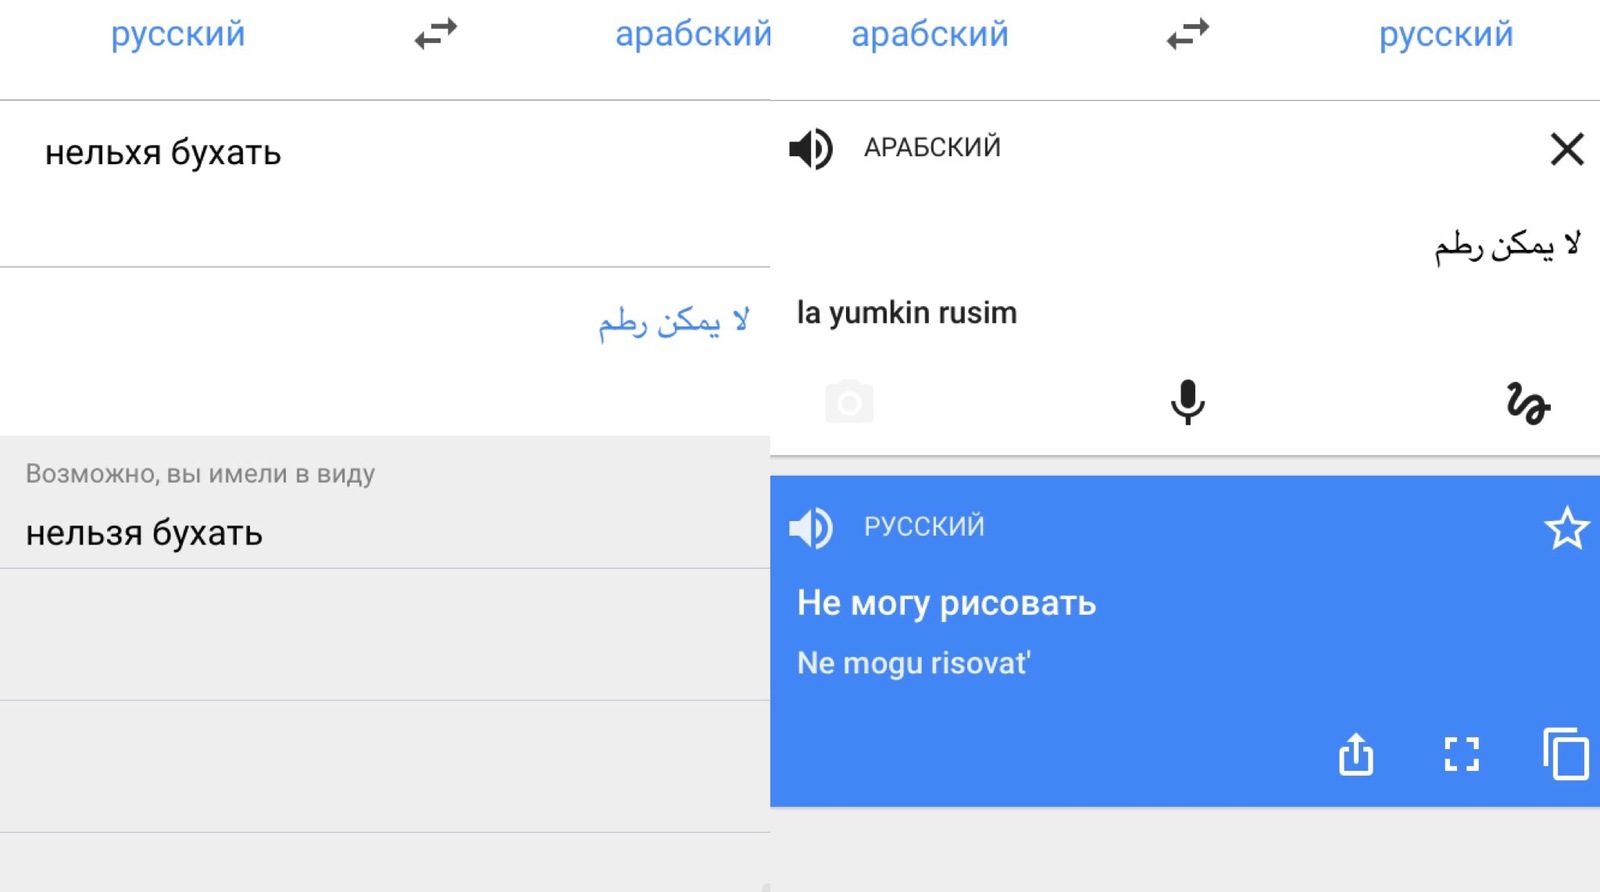 арабский переводчик на русский язык по фото